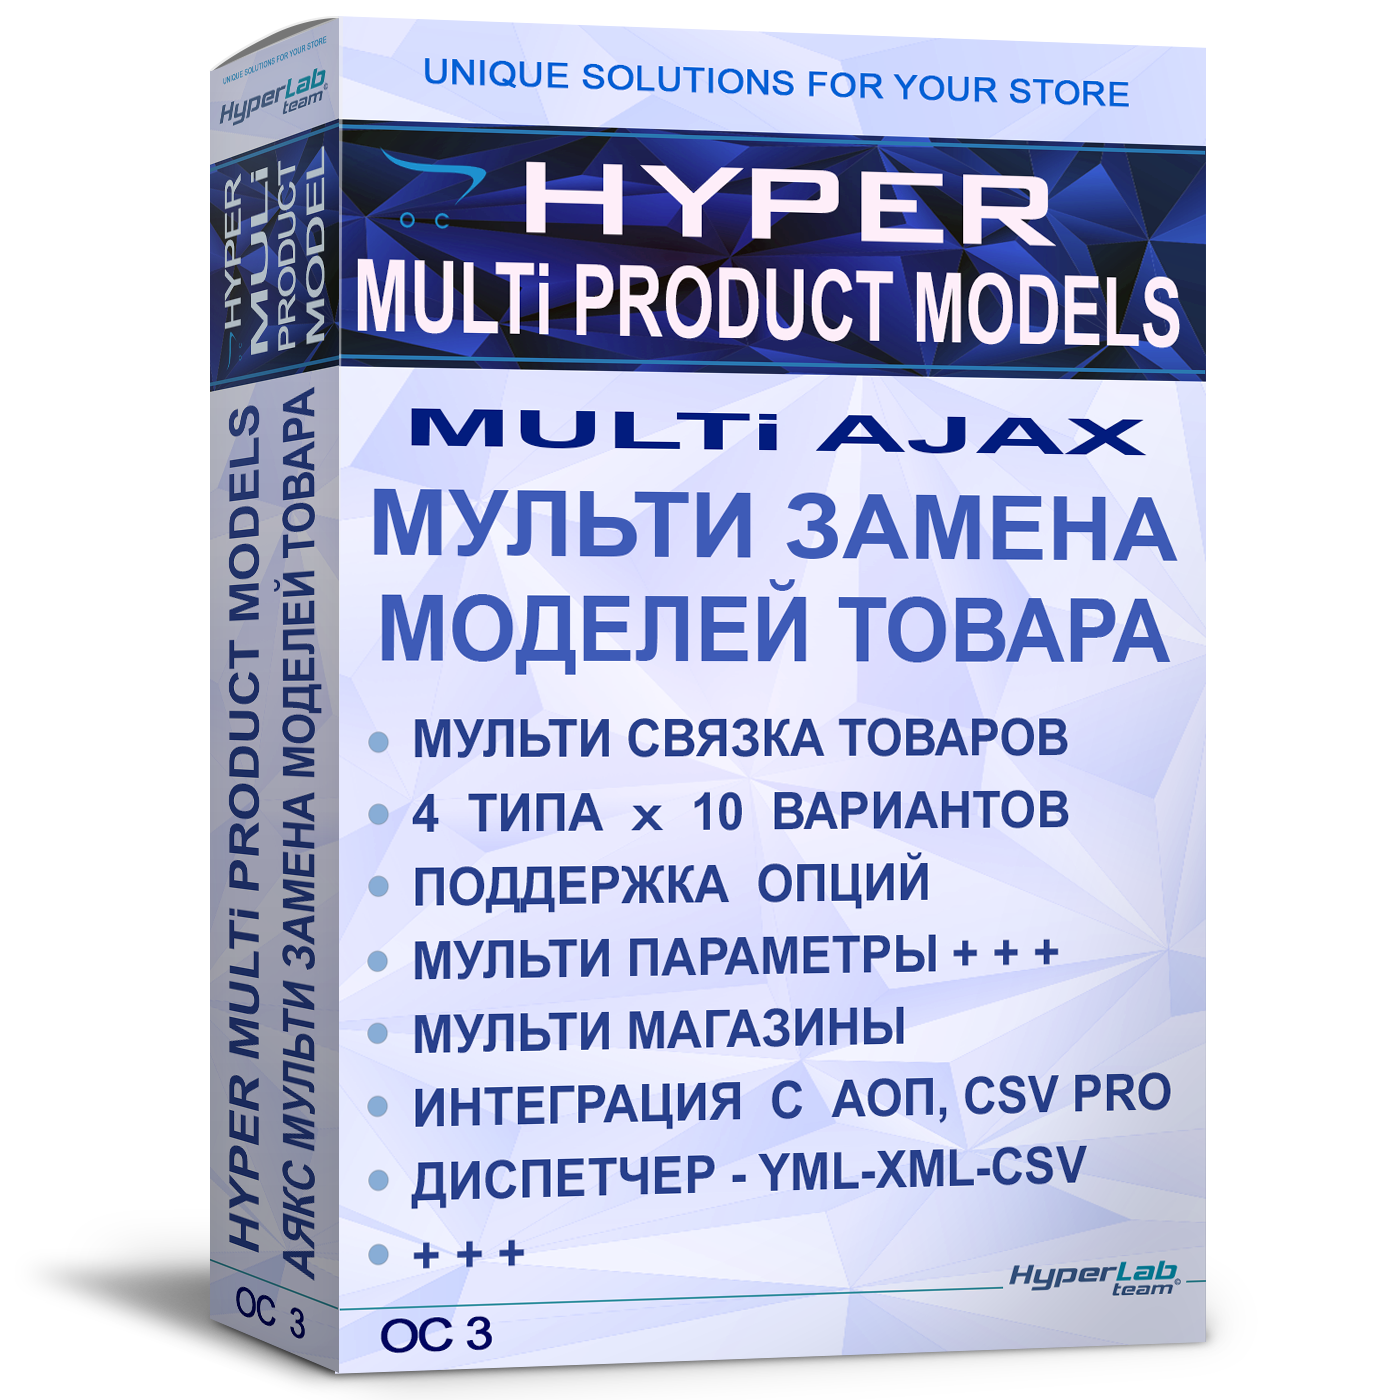 OC3 - HYPER MULTI PRODUCT MODELS - AJAX Мульти замена товара по моделям - OC 3